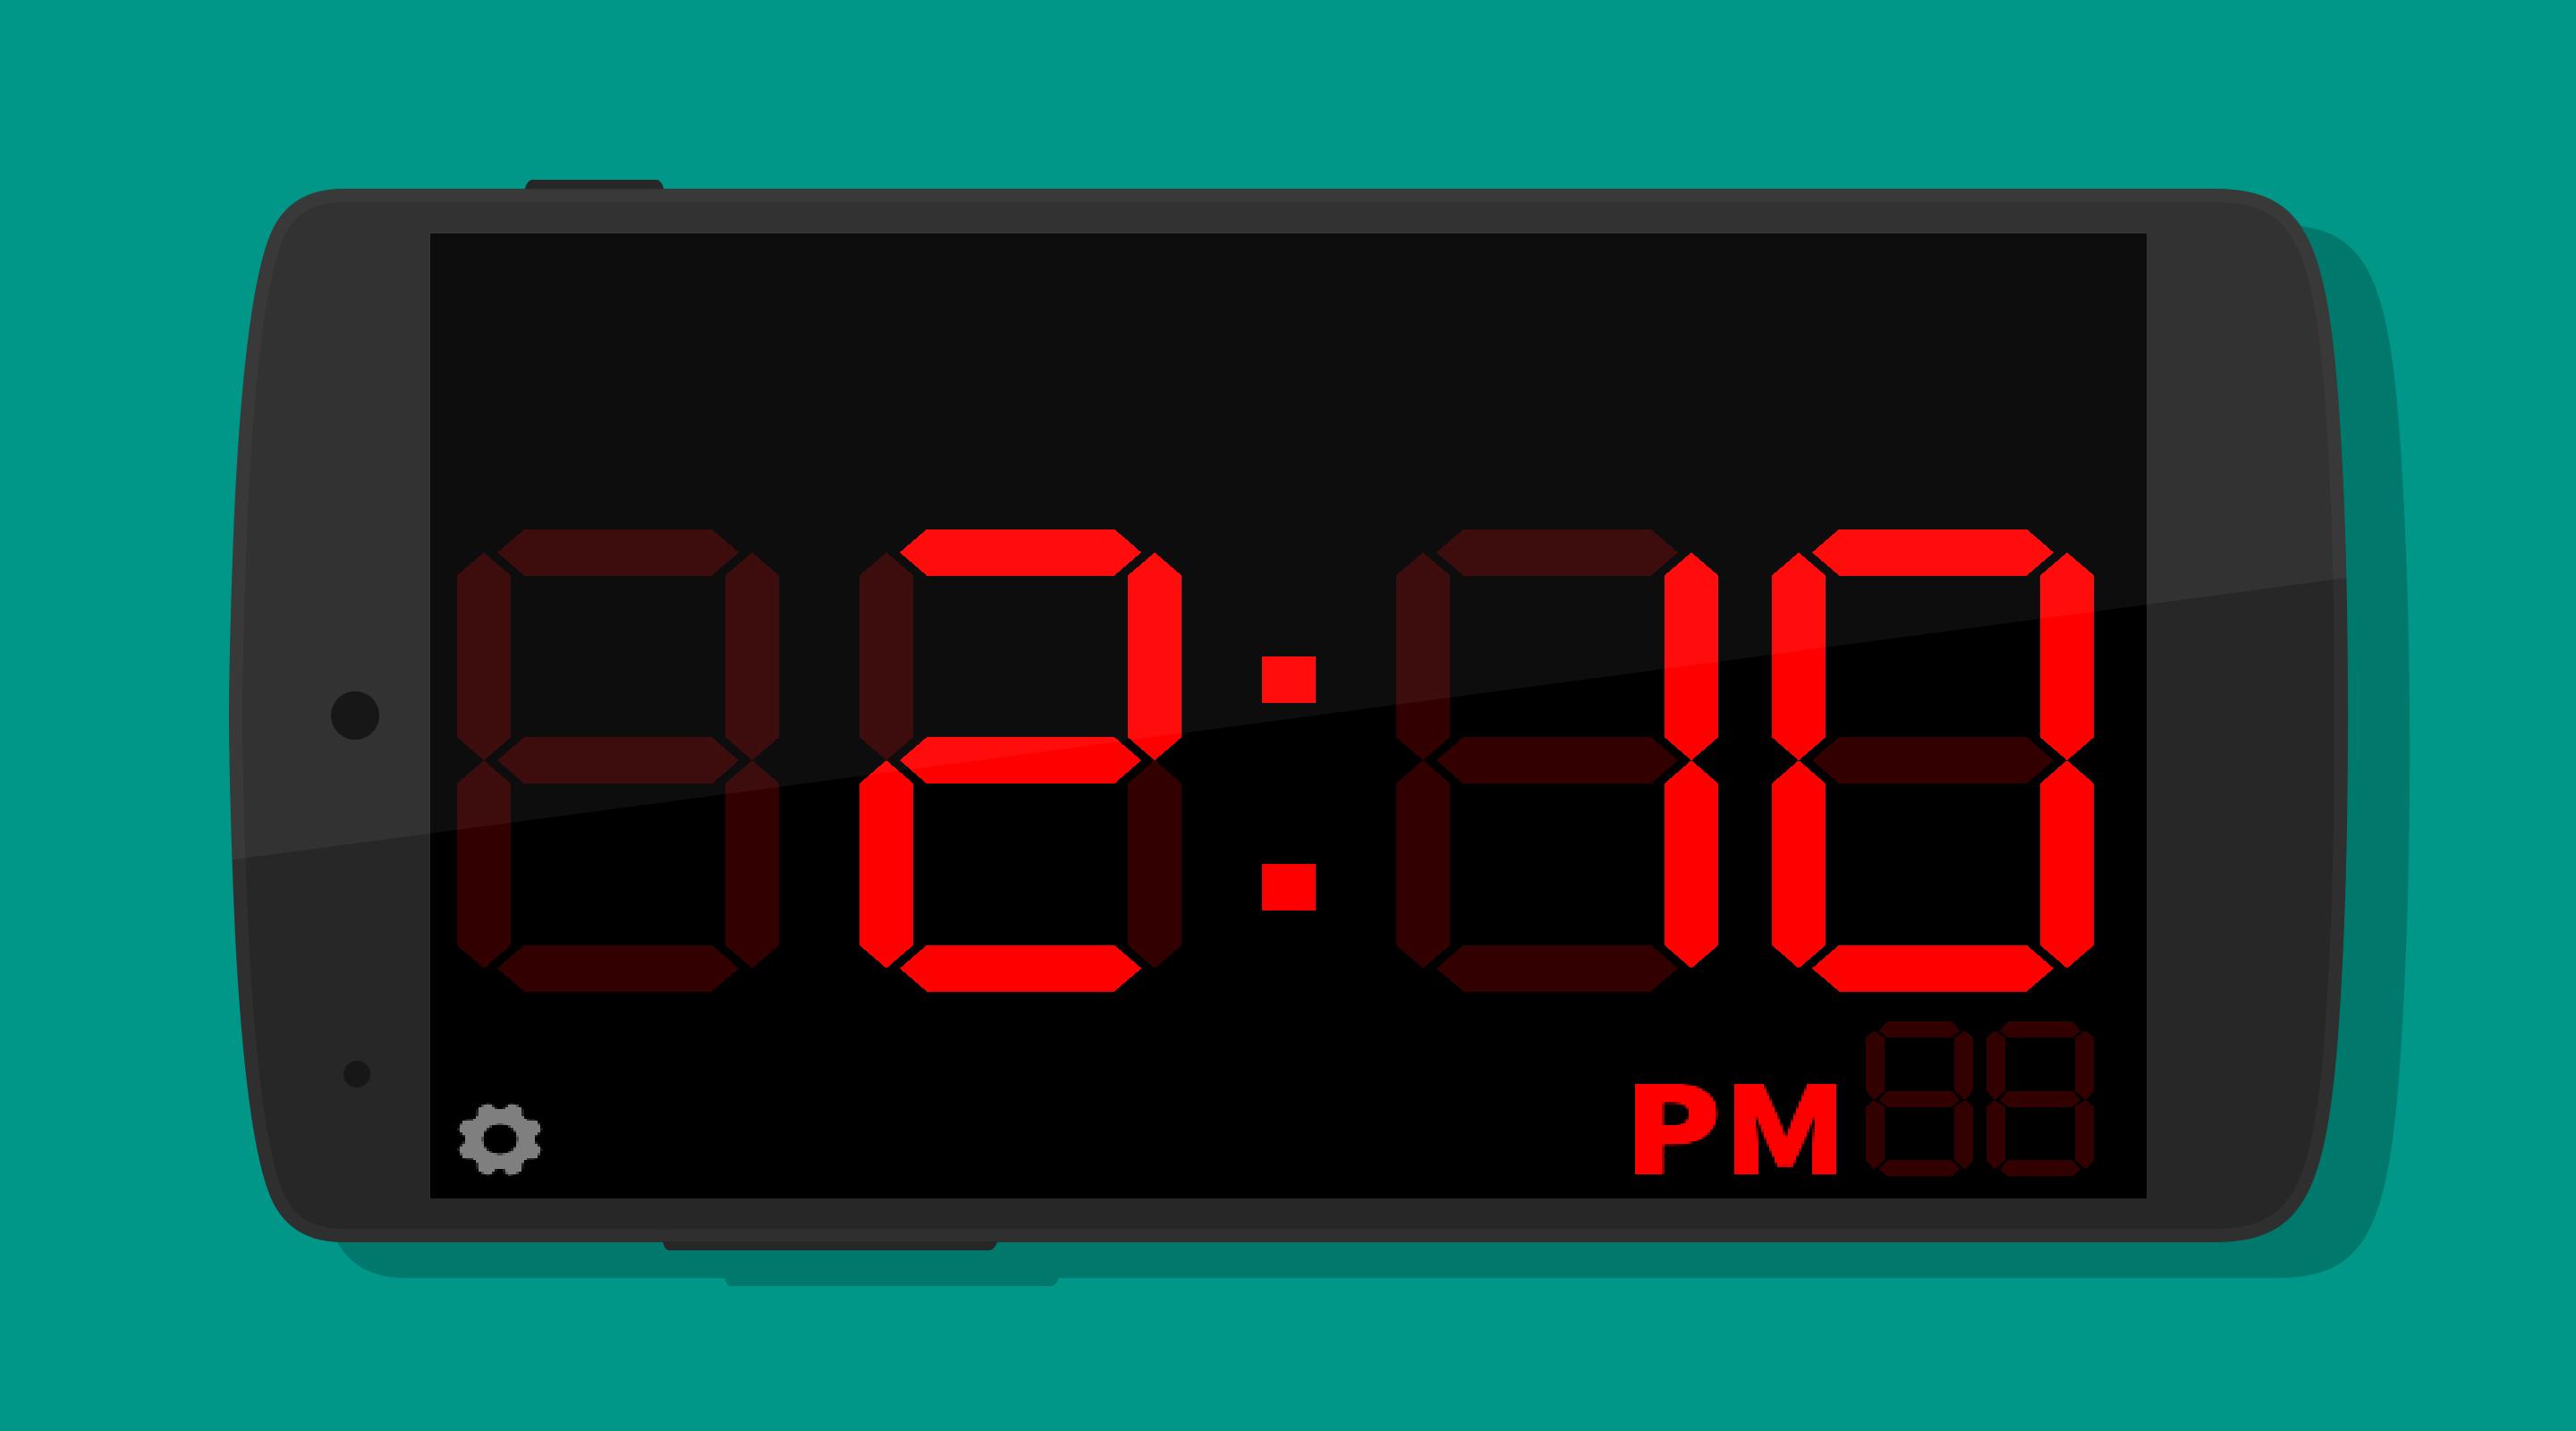 Время 14 06. Часы Digital Clock 200730138828.4. Электронные часы диджитал клок 1018. Электронные часы 2:00. Циферблат электронных часов.